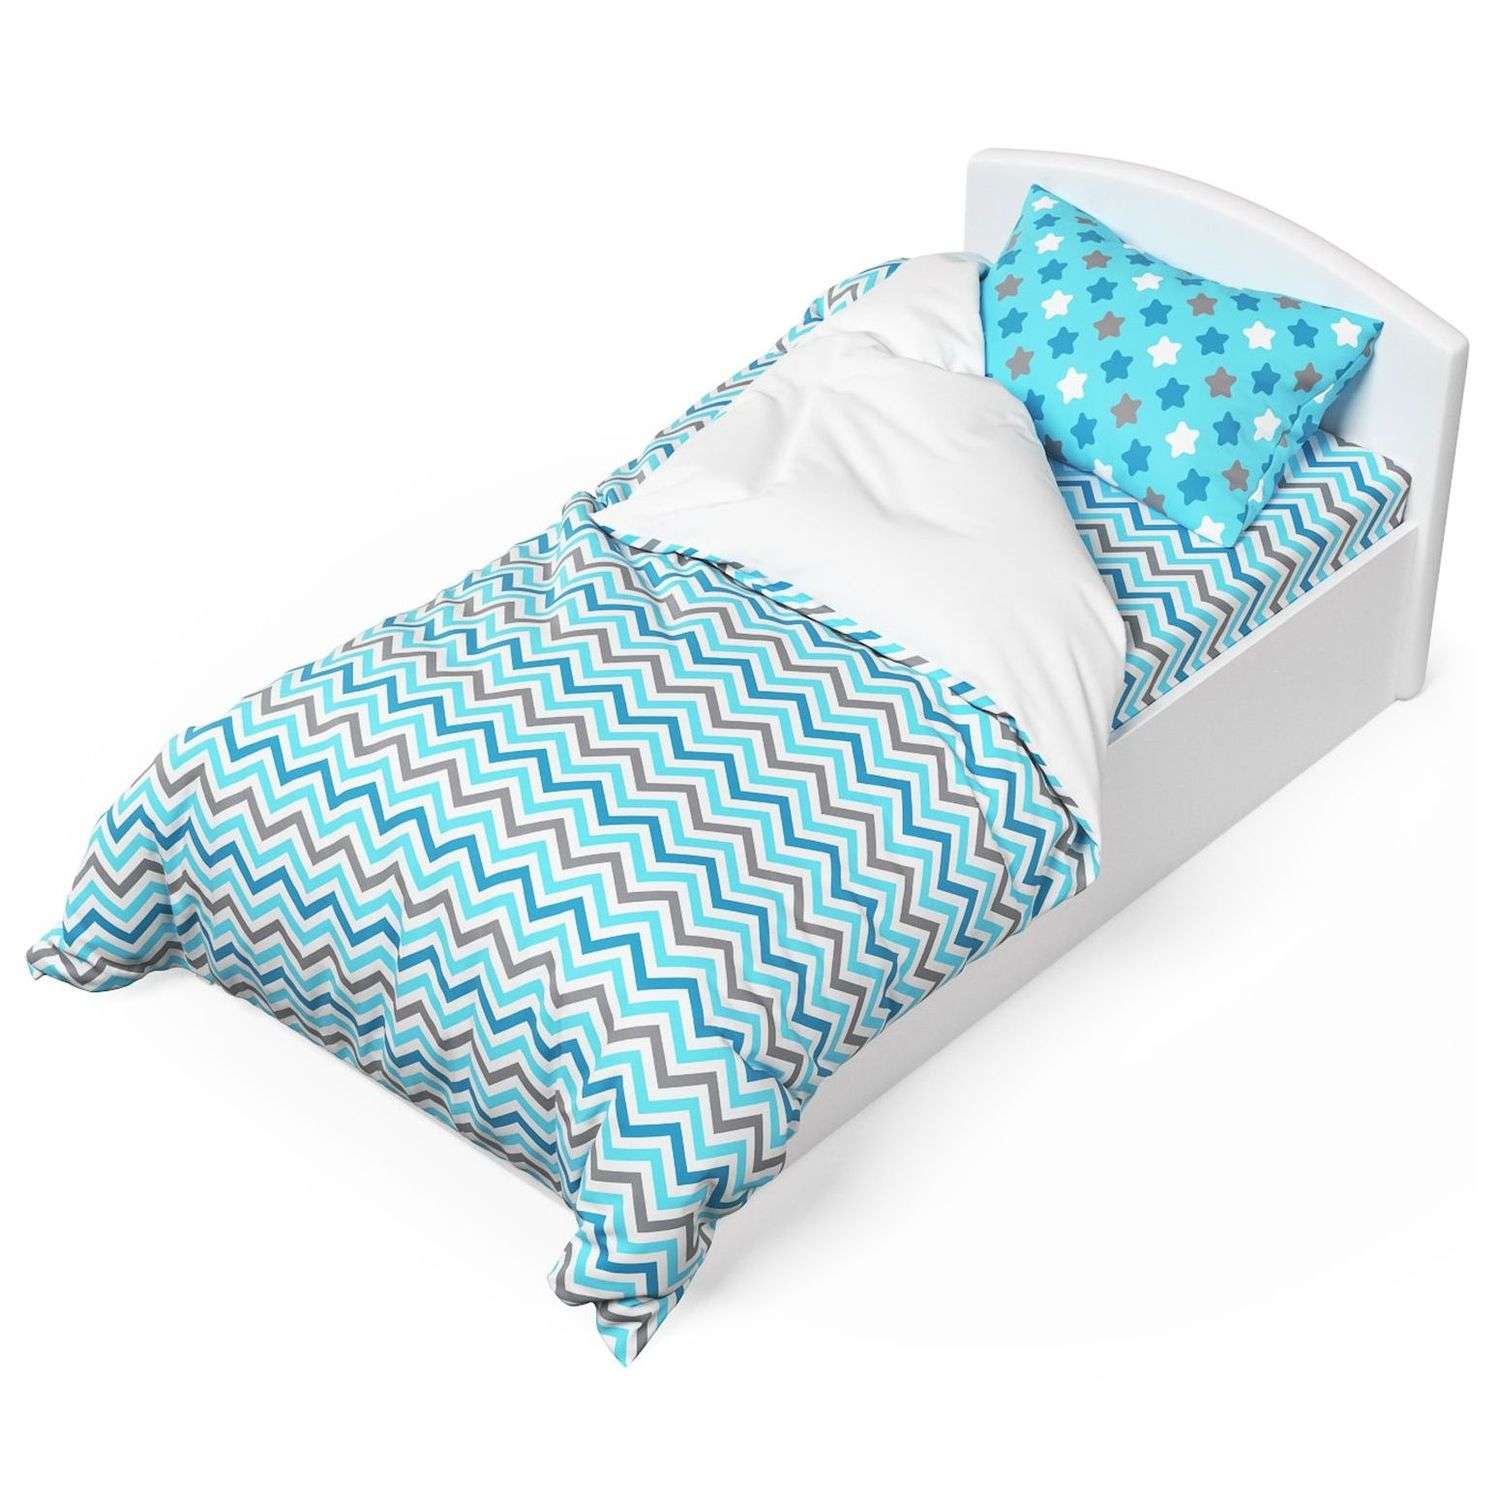 Комплект постельного белья Капризун Голубая лагуна 1.5спальный 3предмета - фото 1